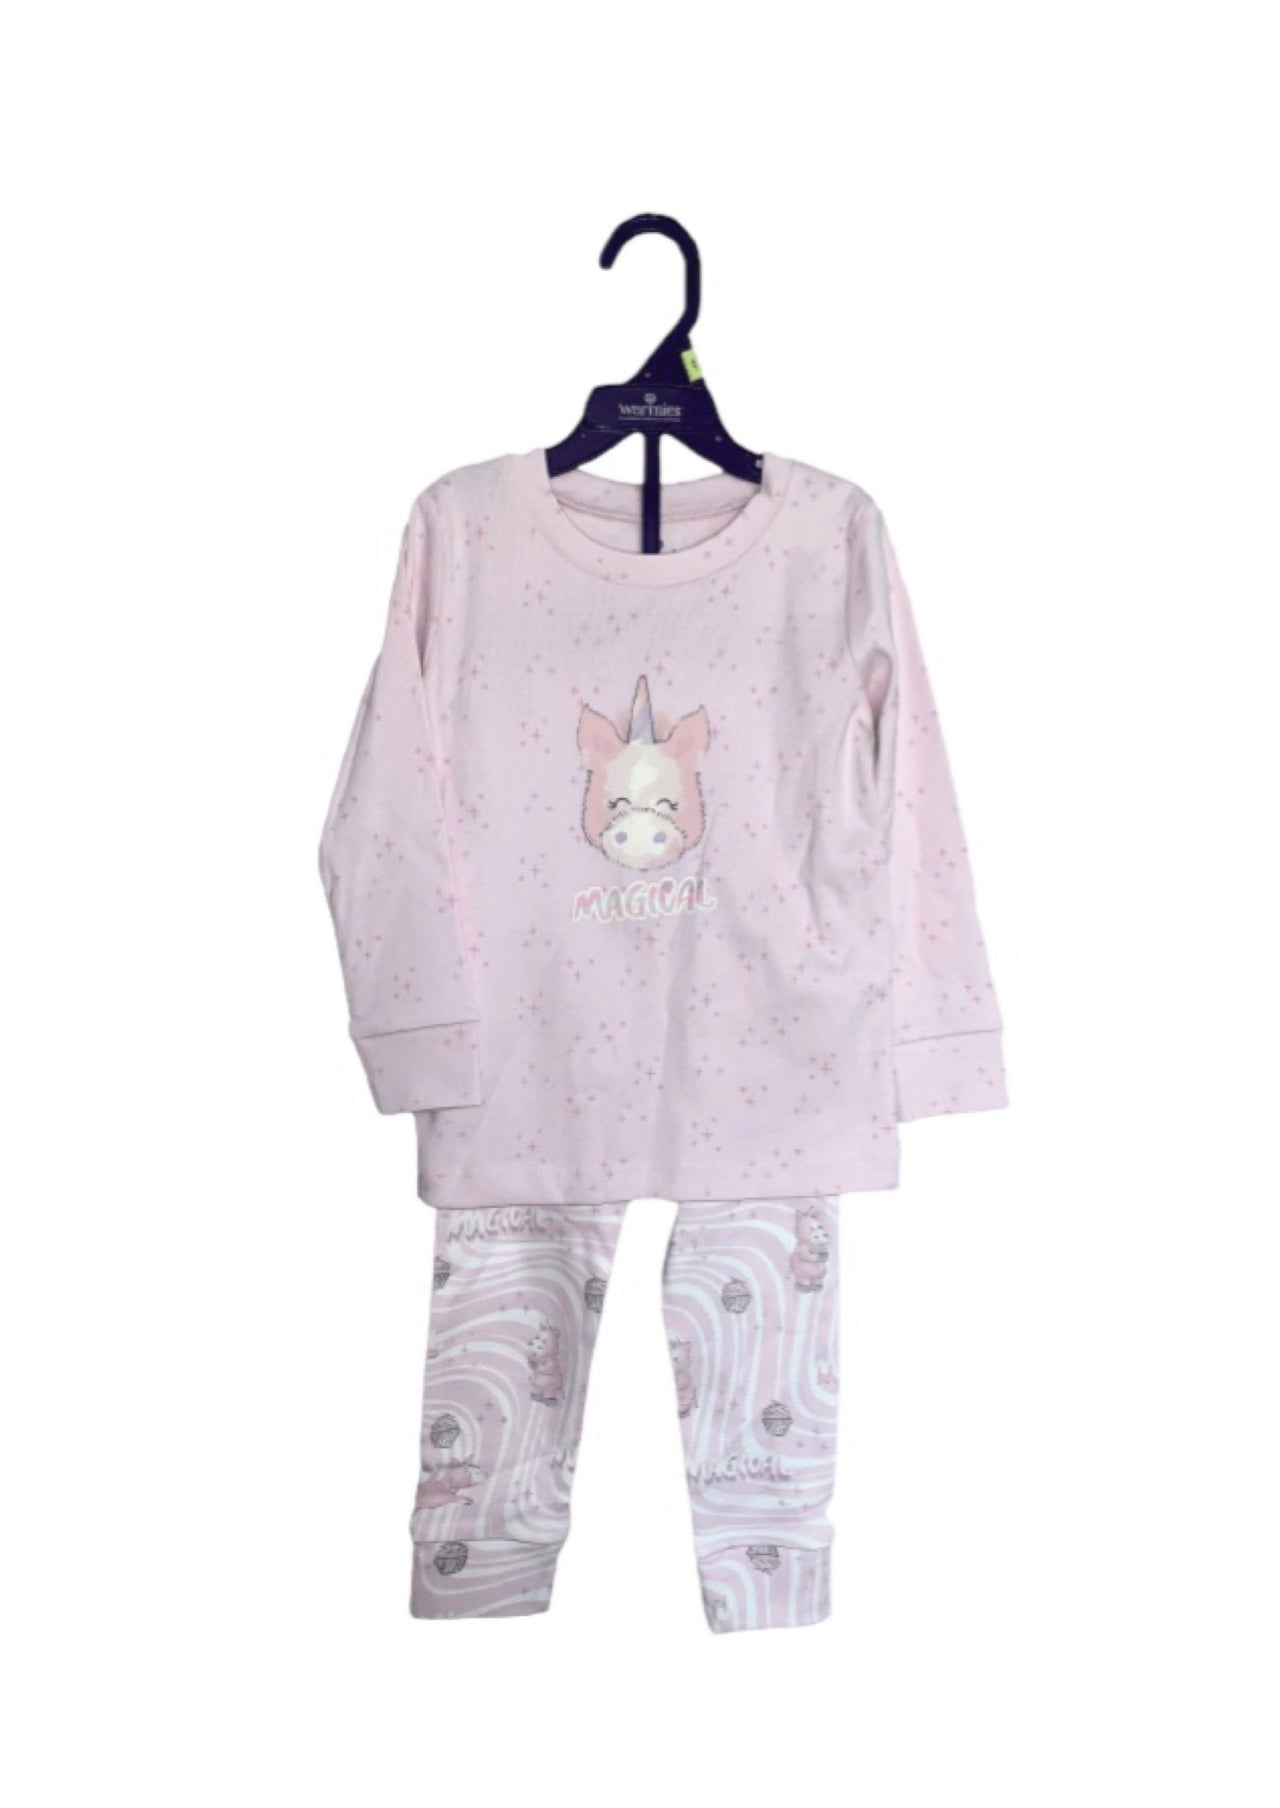 Warmies Pink Unicorn Toddler Pajama Sets INTELLEX/Warmies CHILDREN